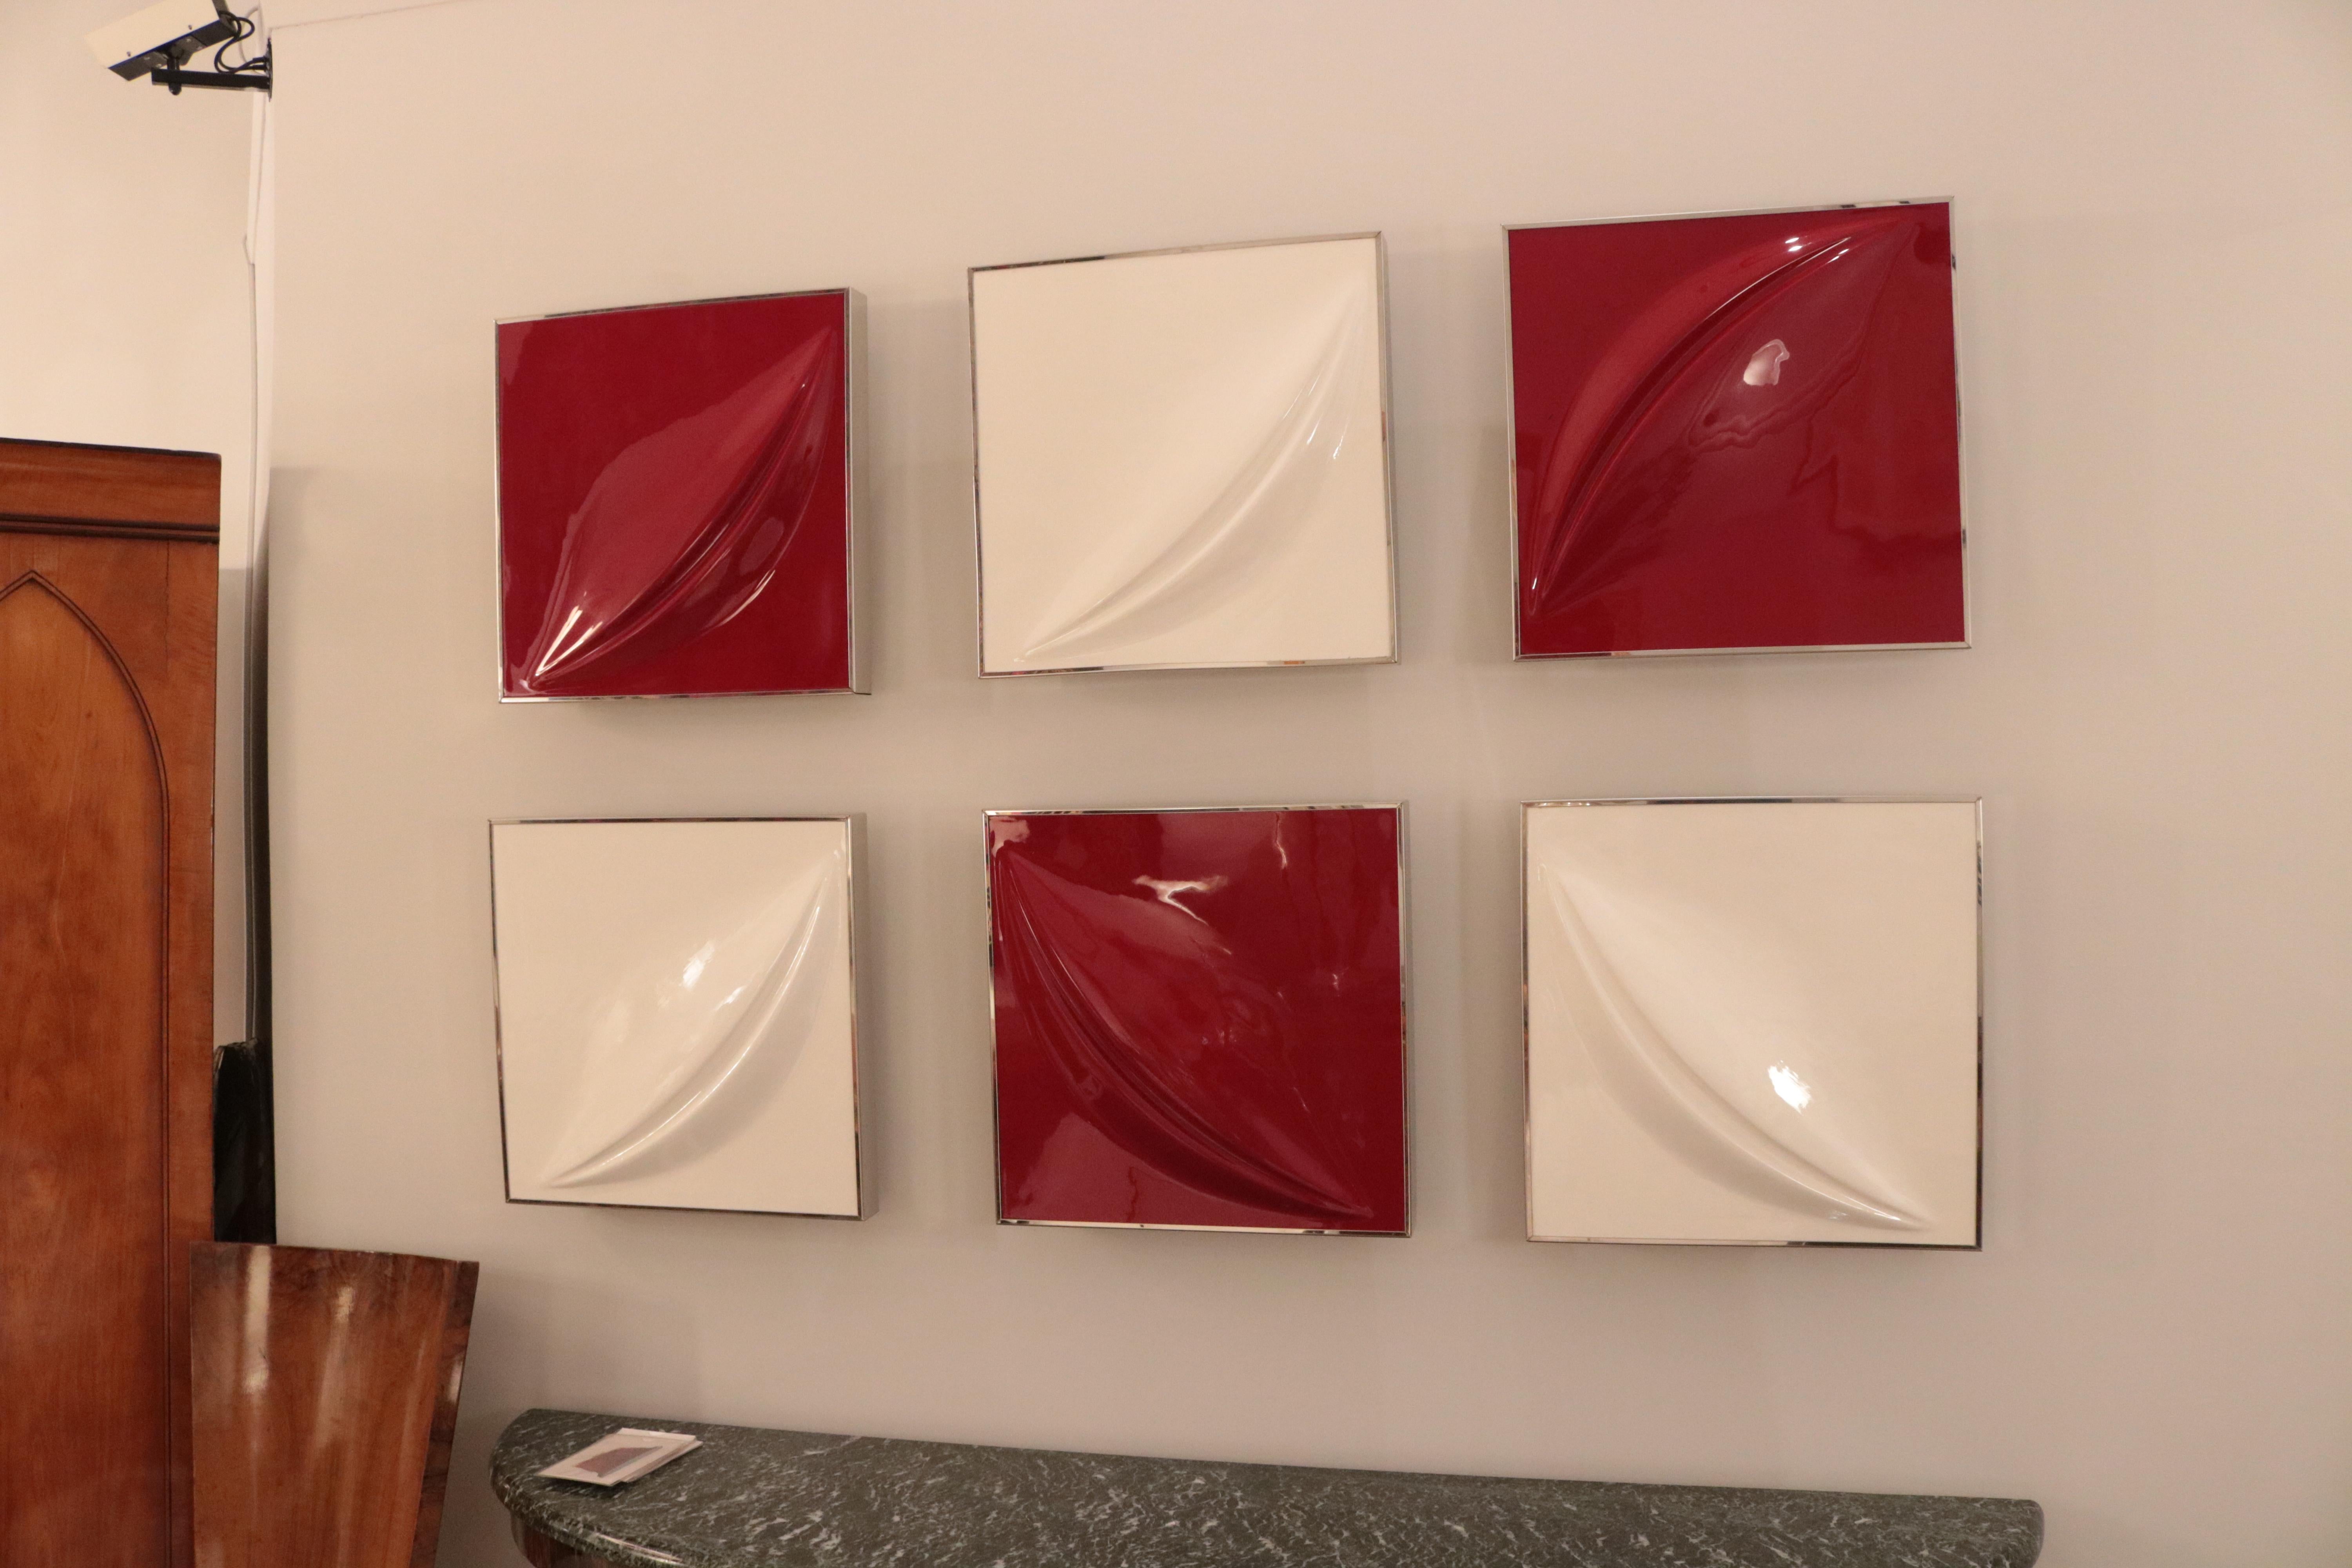 Un ensemble de six reliefs muraux modernistes.
Formes abstraites en fibre de verre rouge et blanche montées dans des cadres chromés.
       